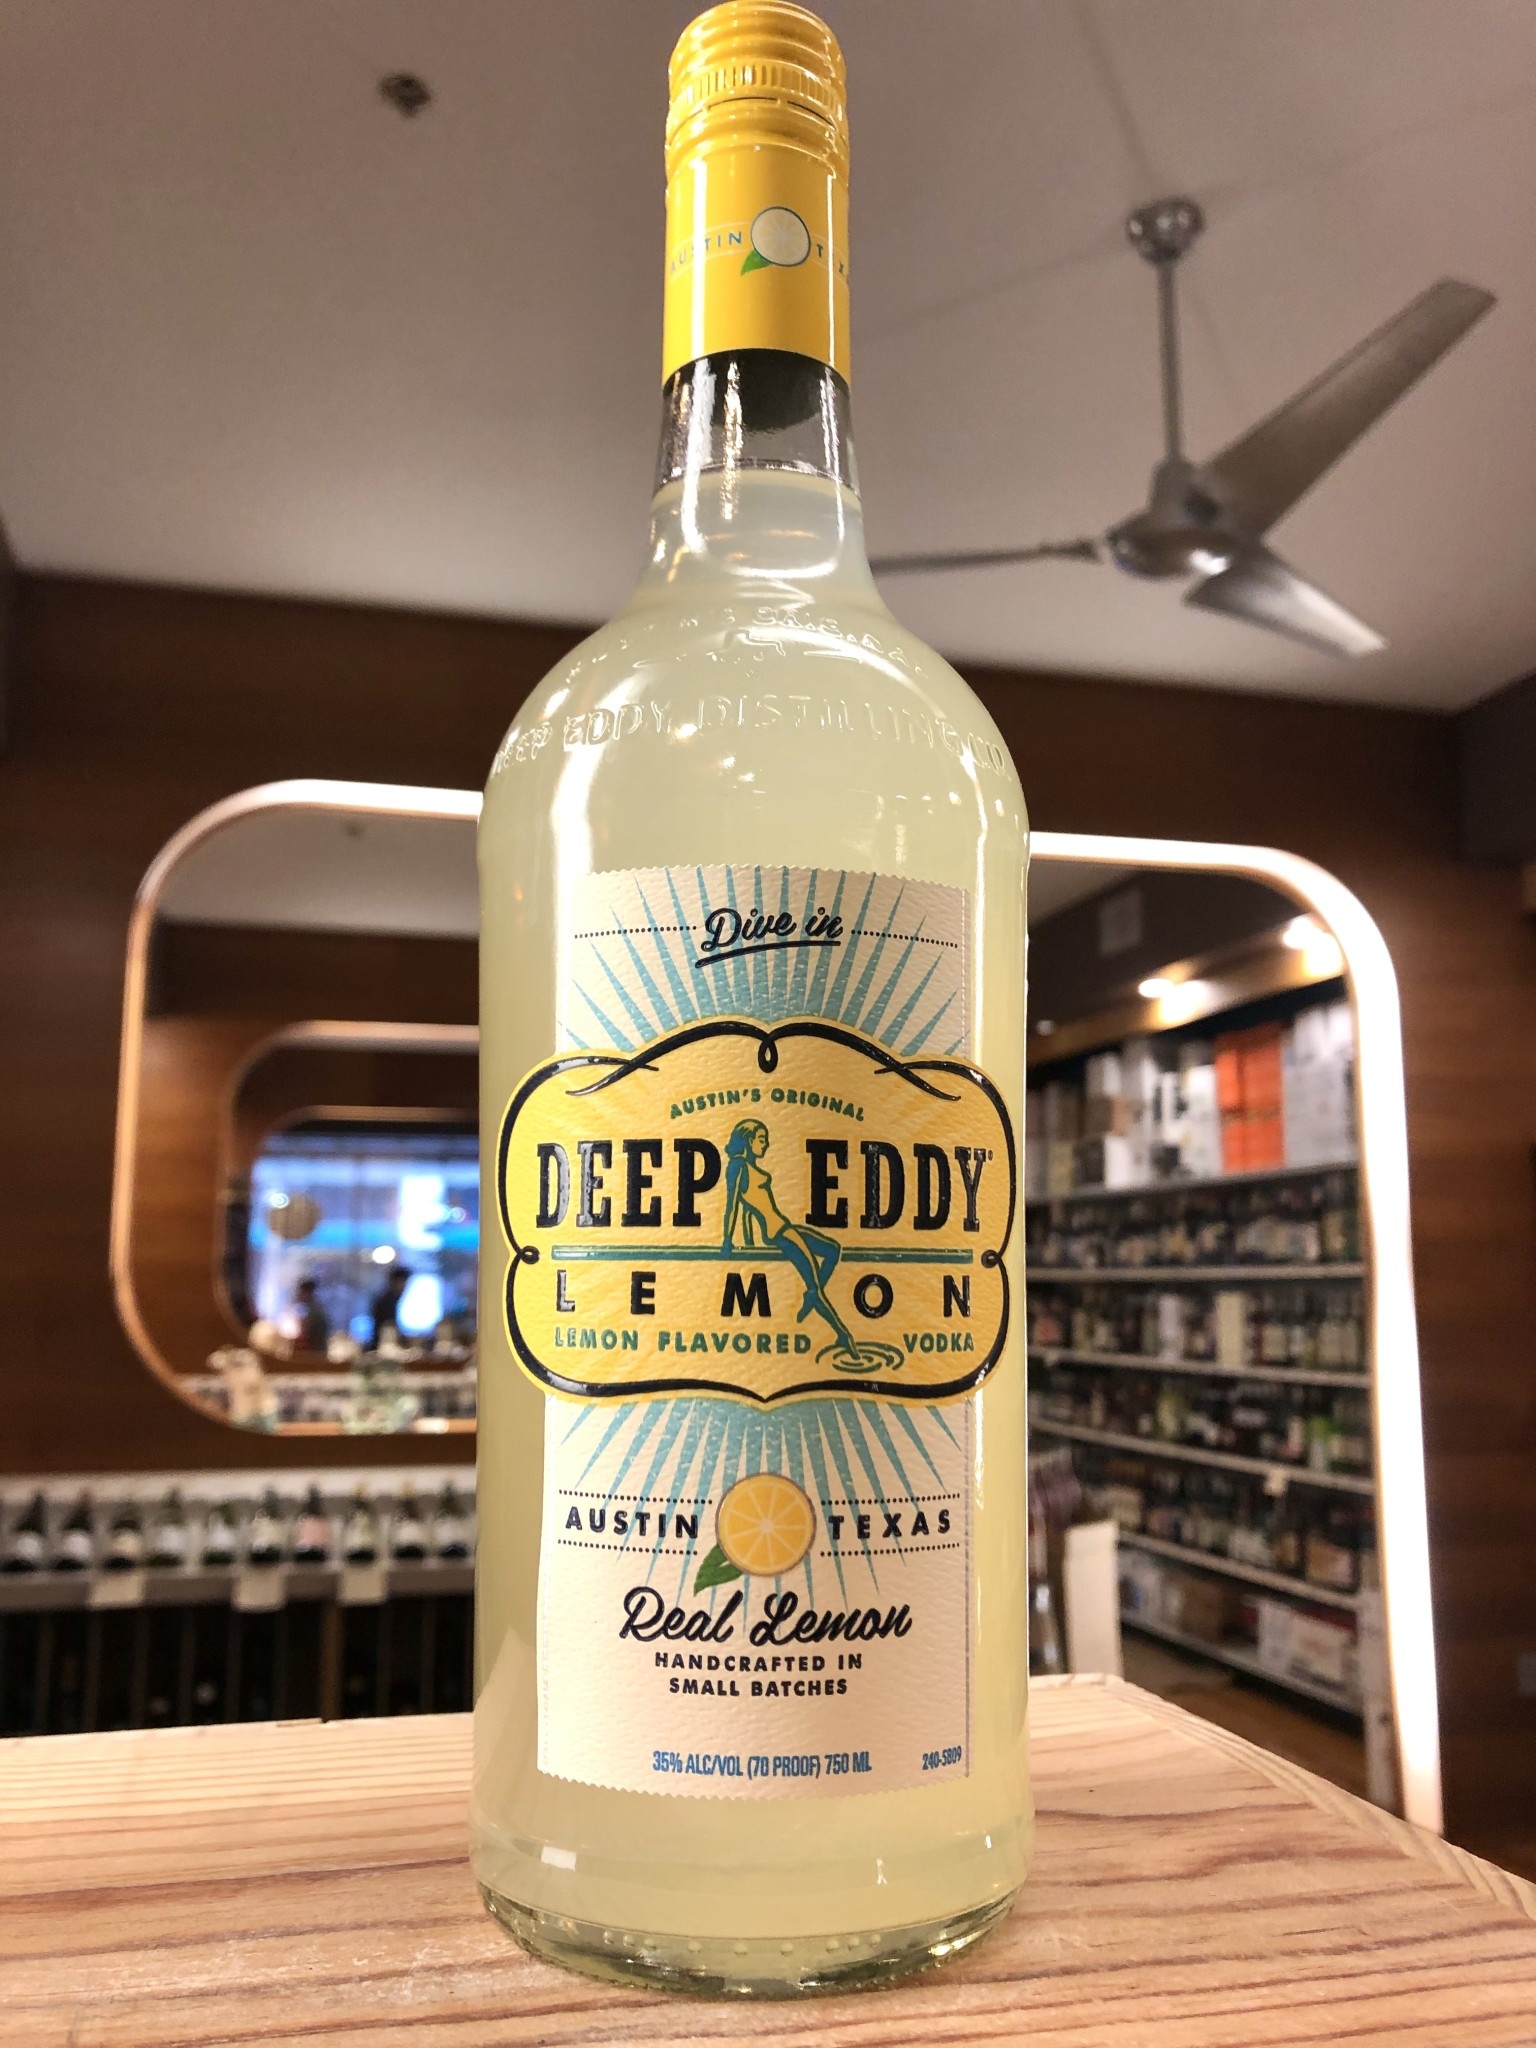 deep eddy lemon vodka recipe